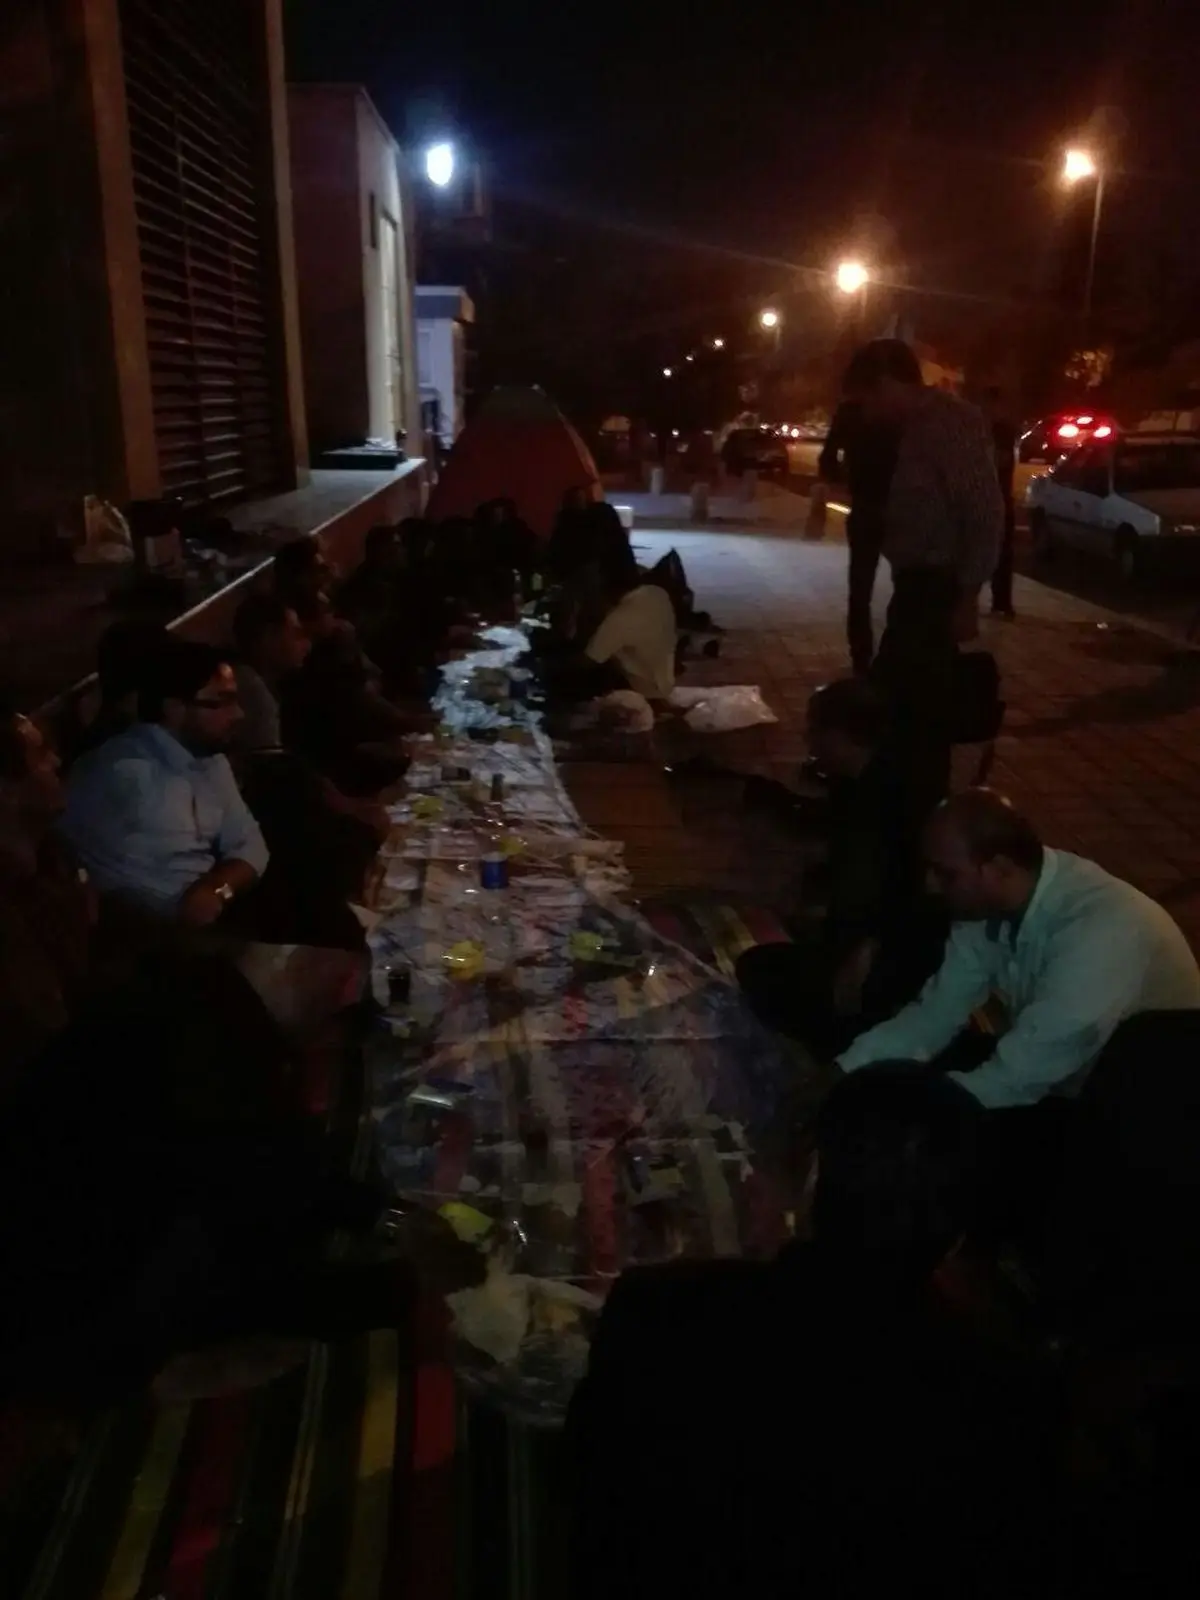 کارکنان سهام عدالت شب را در خیابان گذراندند/ادامه اعتراضات با طلوع آفتاب 